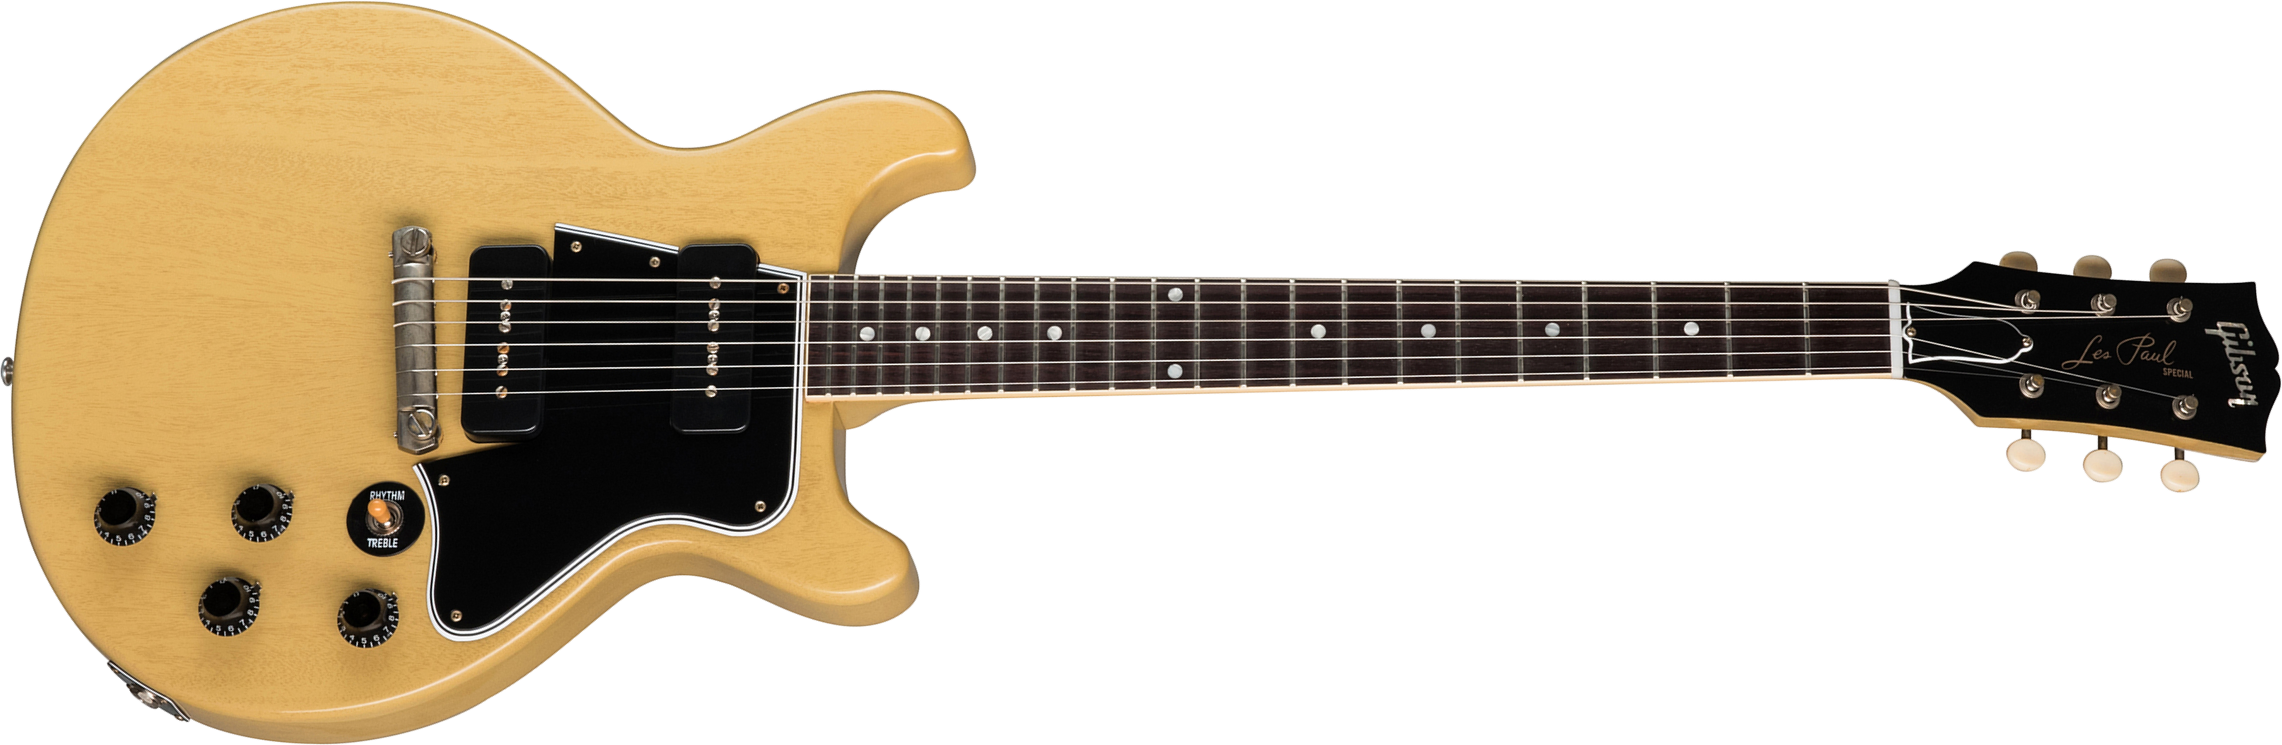 Gibson Custom Shop Les Paul Special 1960 Double Cut Reissue 2p90 Ht Rw - Vos Tv Yellow - Enkel gesneden elektrische gitaar - Main picture